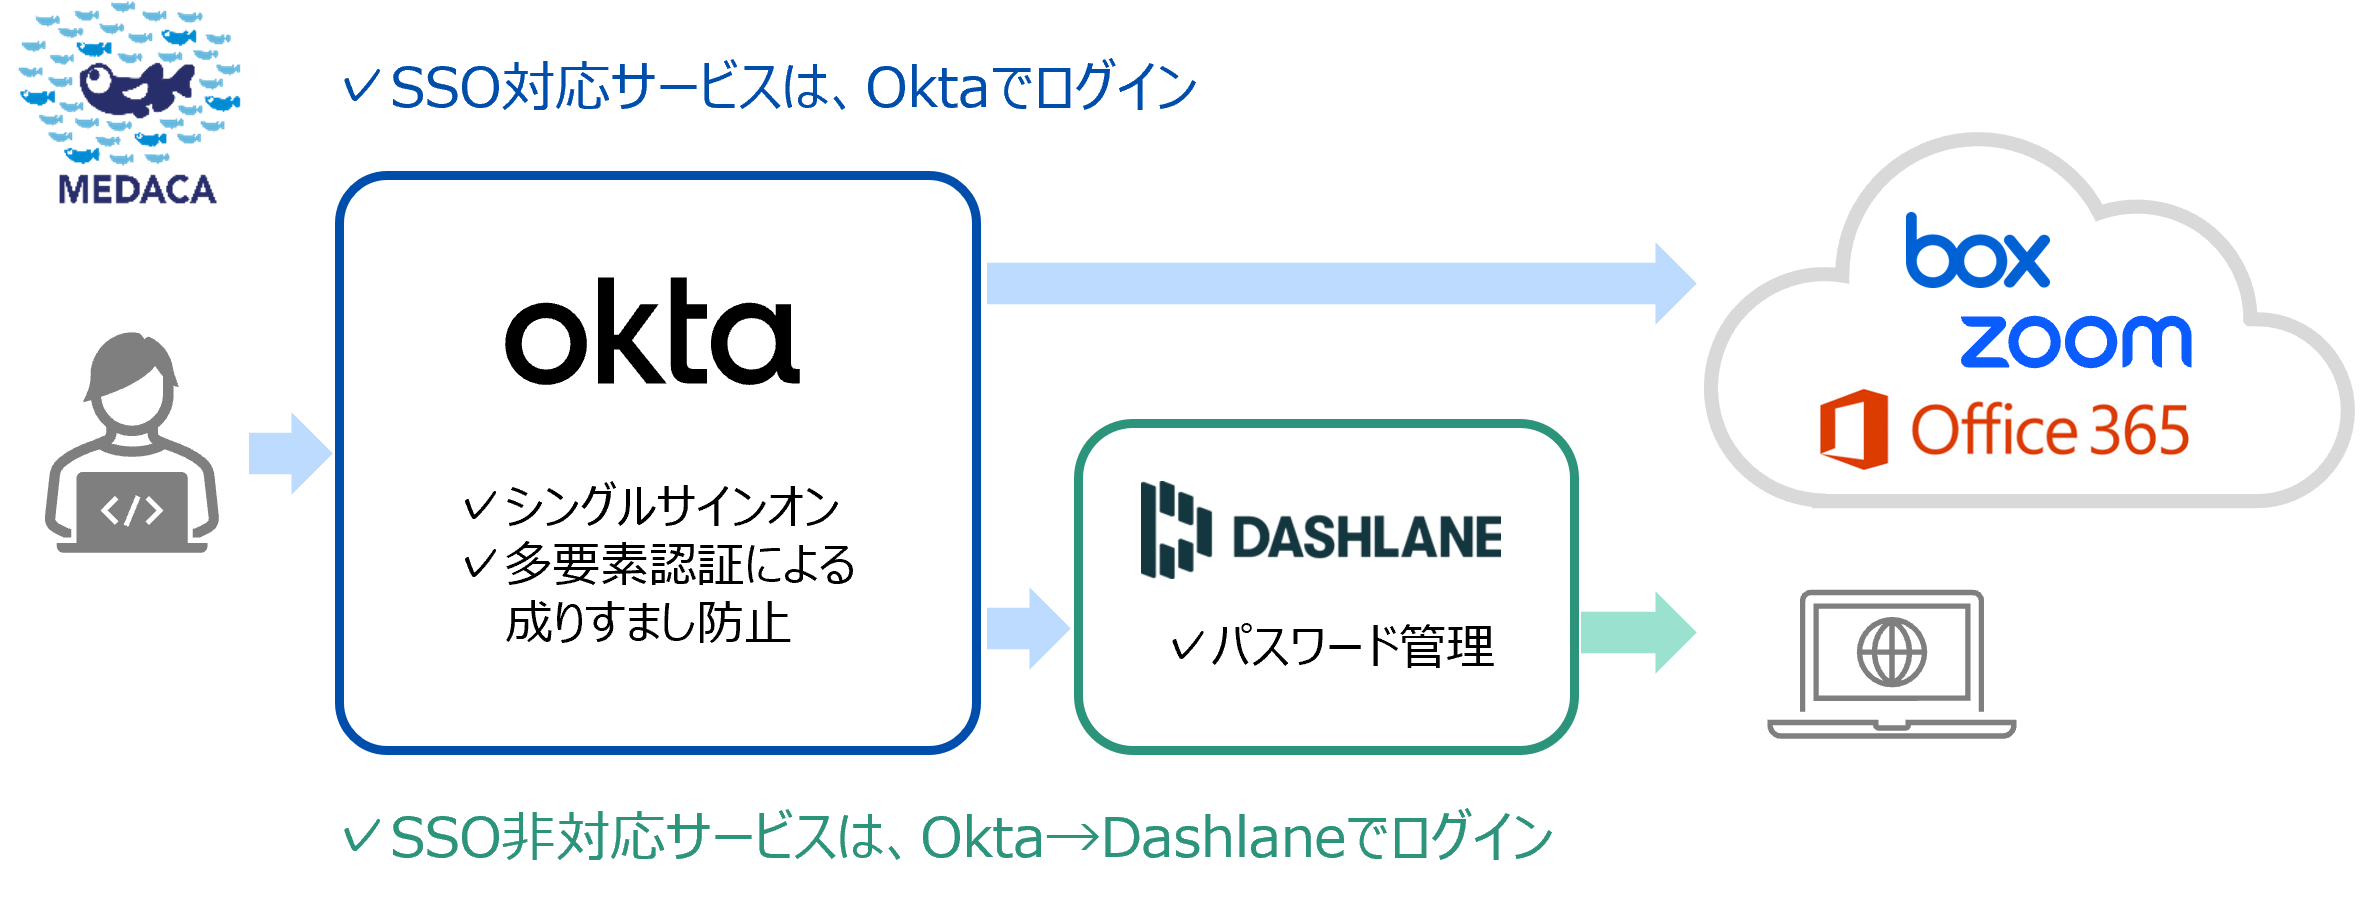 MEDACA認証ソリューション(Okta、Dashlane)